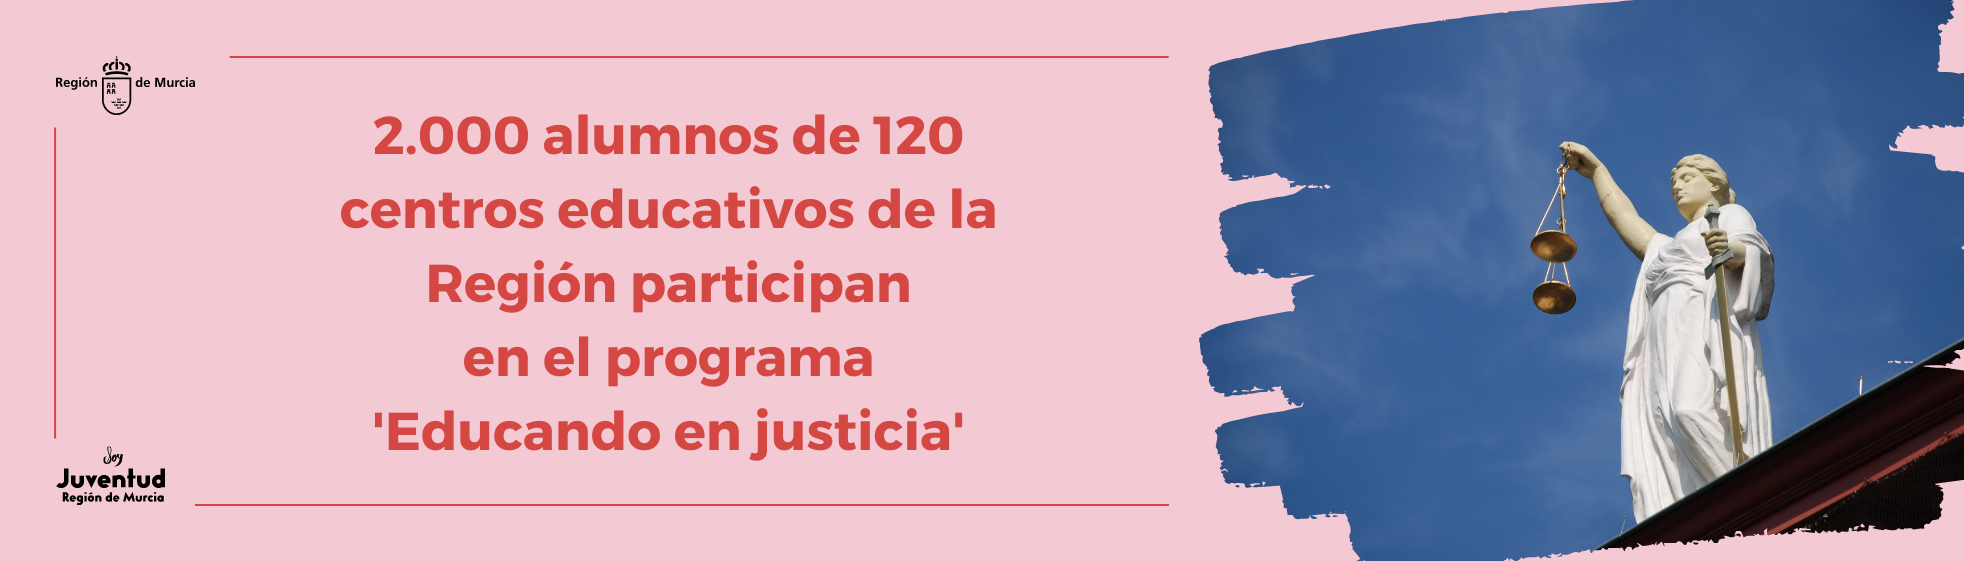 2.000 alumnos de 120 centros educativos de la Región participan en el programa 'Educando en justicia'